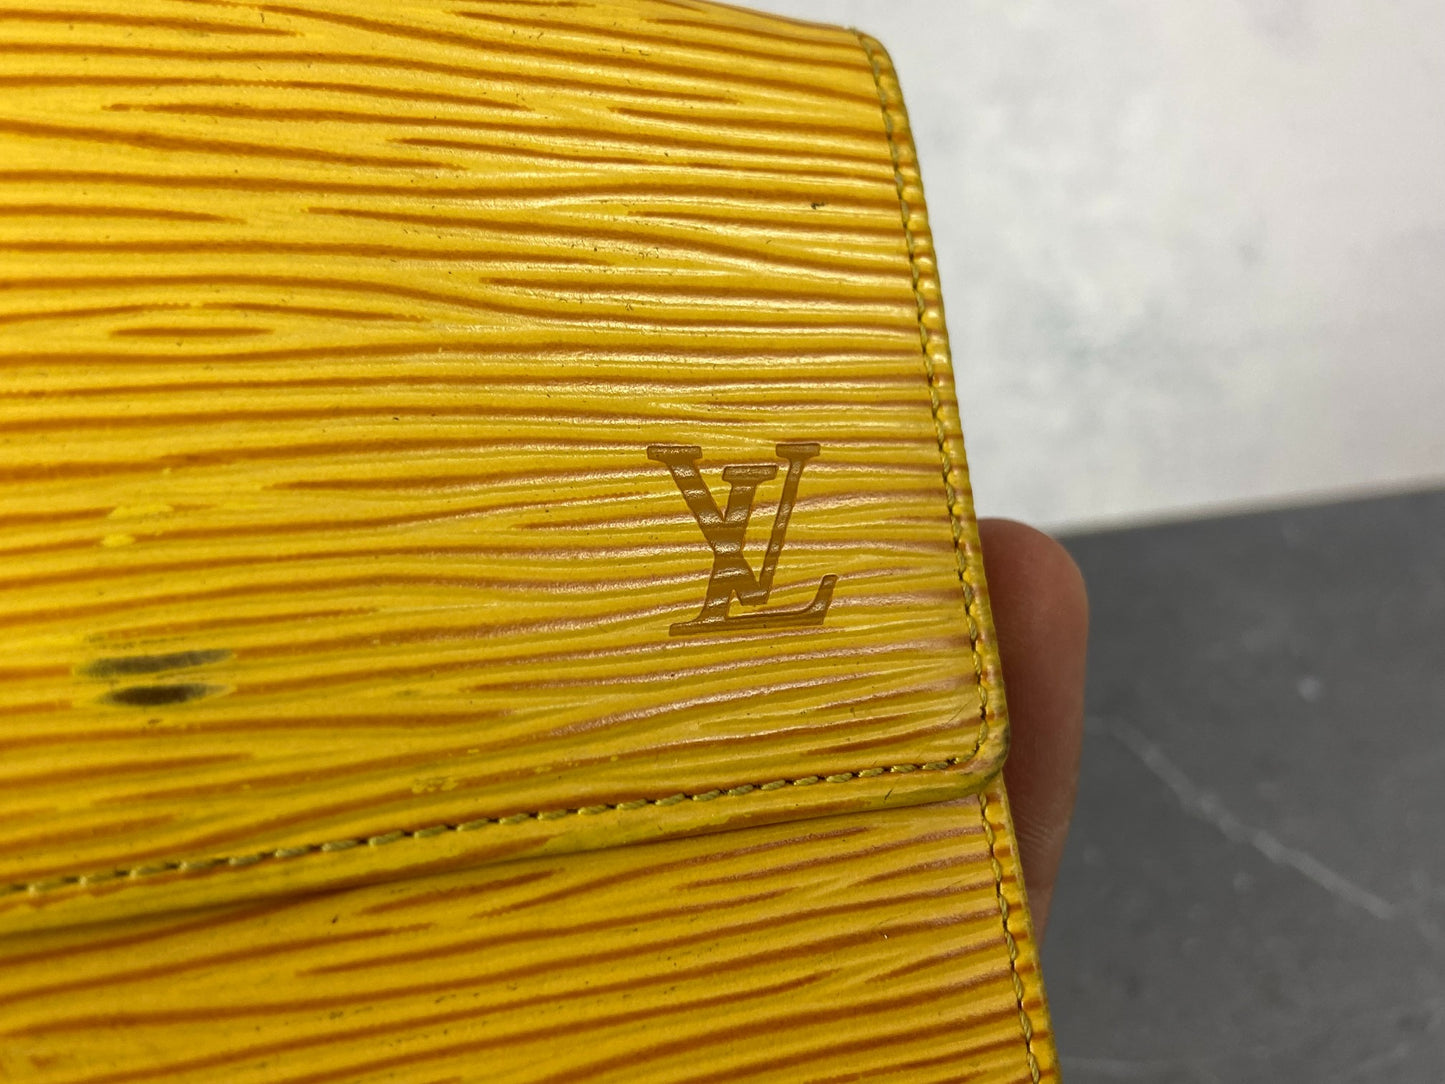 Louis Vuitton Elise Wallet Yellow Epi Leather